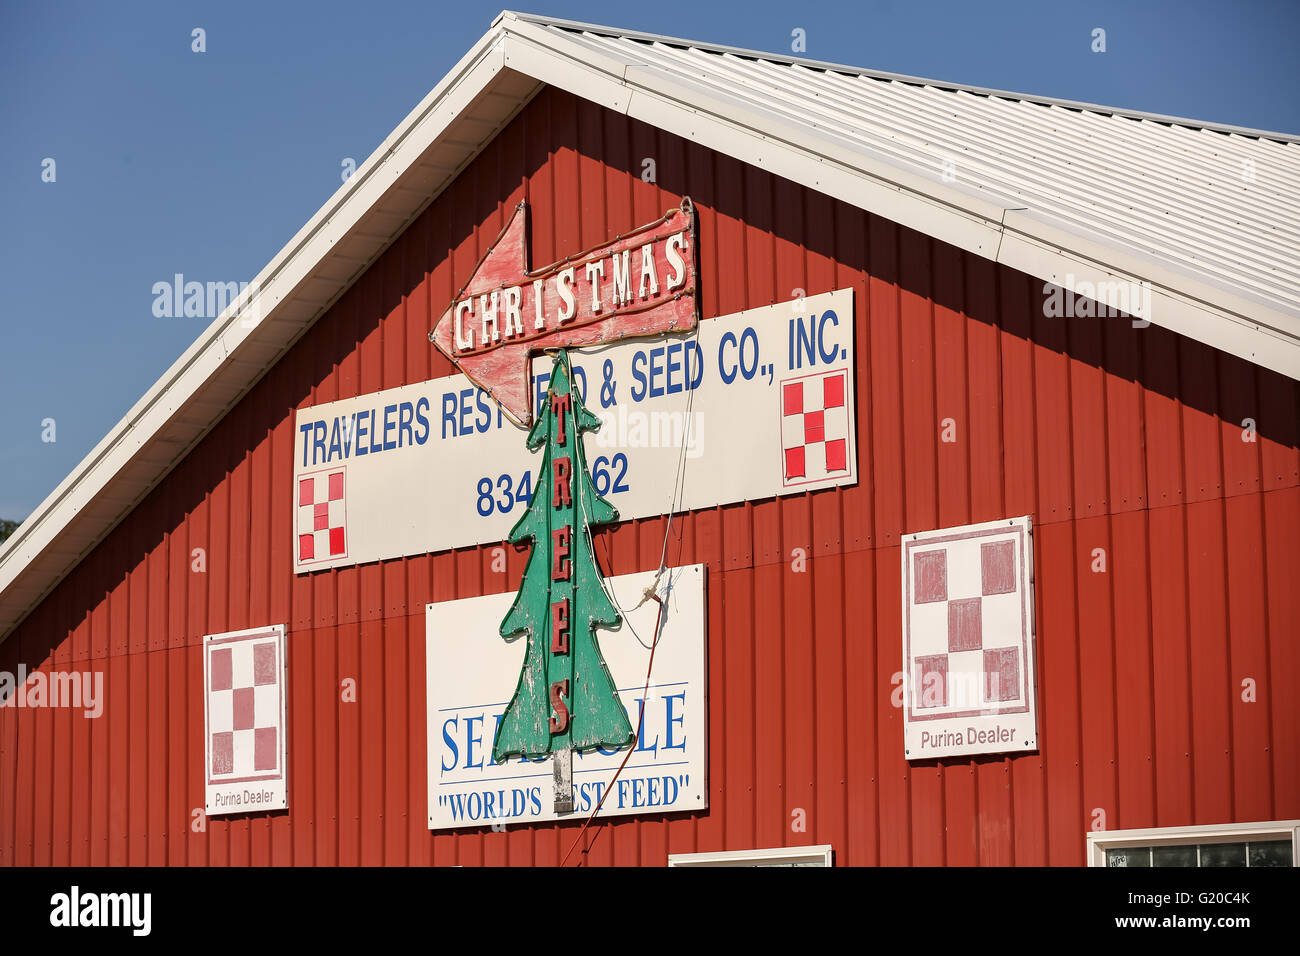 Travelers Rest Feed & magasin de graines de voyageurs reste près de Greenville, Caroline du Sud. Banque D'Images